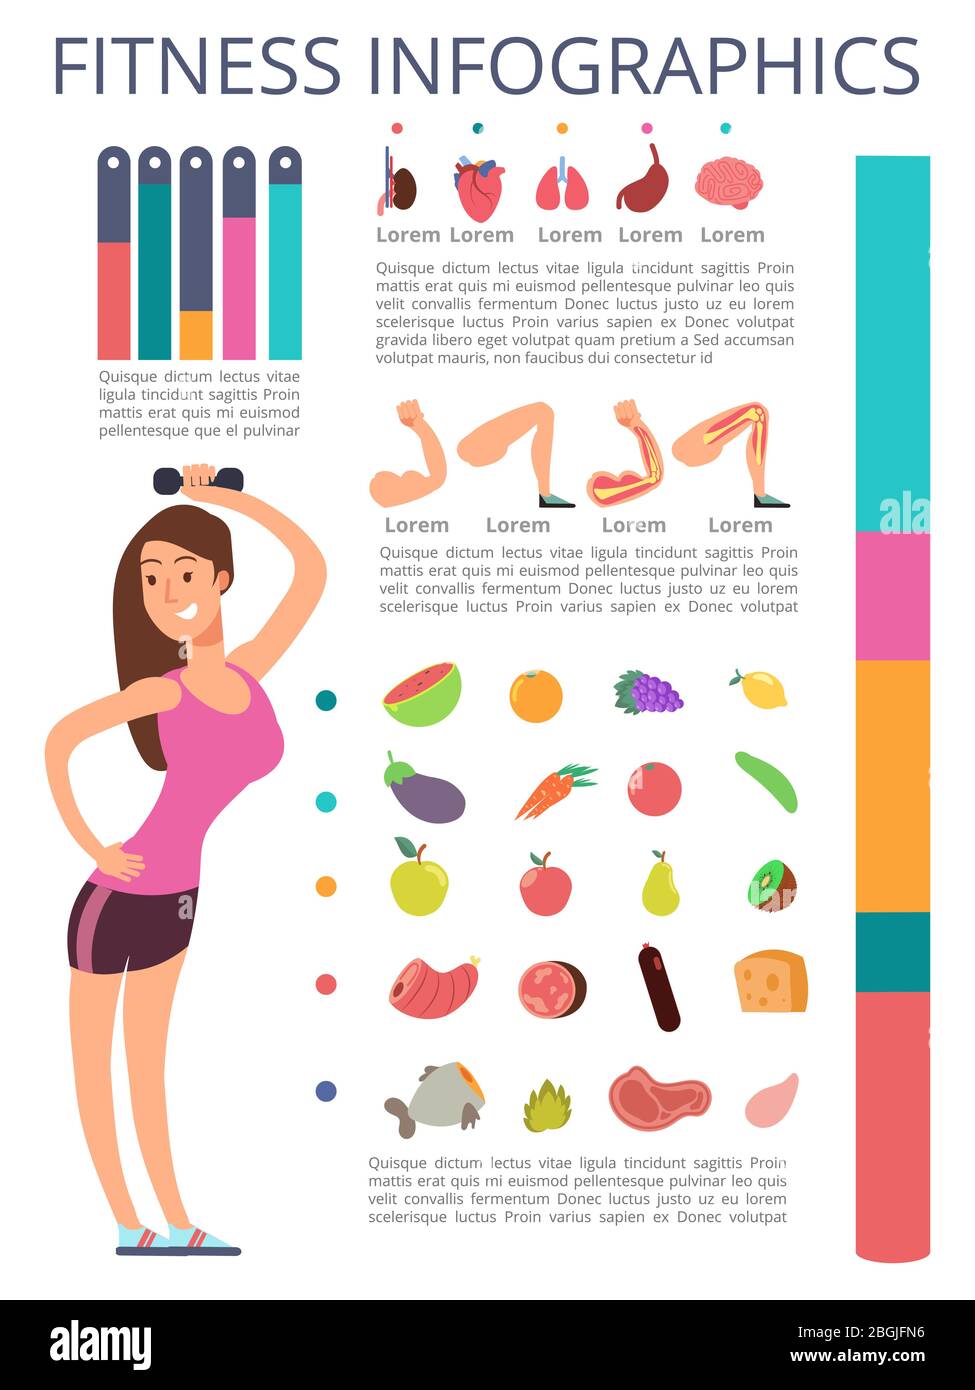 Personaggio donna sport isolato su sfondo bianco. Infografica su fitness e stile di vita sano. Sport sano femminile, fitness infografica lifestyle. Illustrazione vettoriale Illustrazione Vettoriale